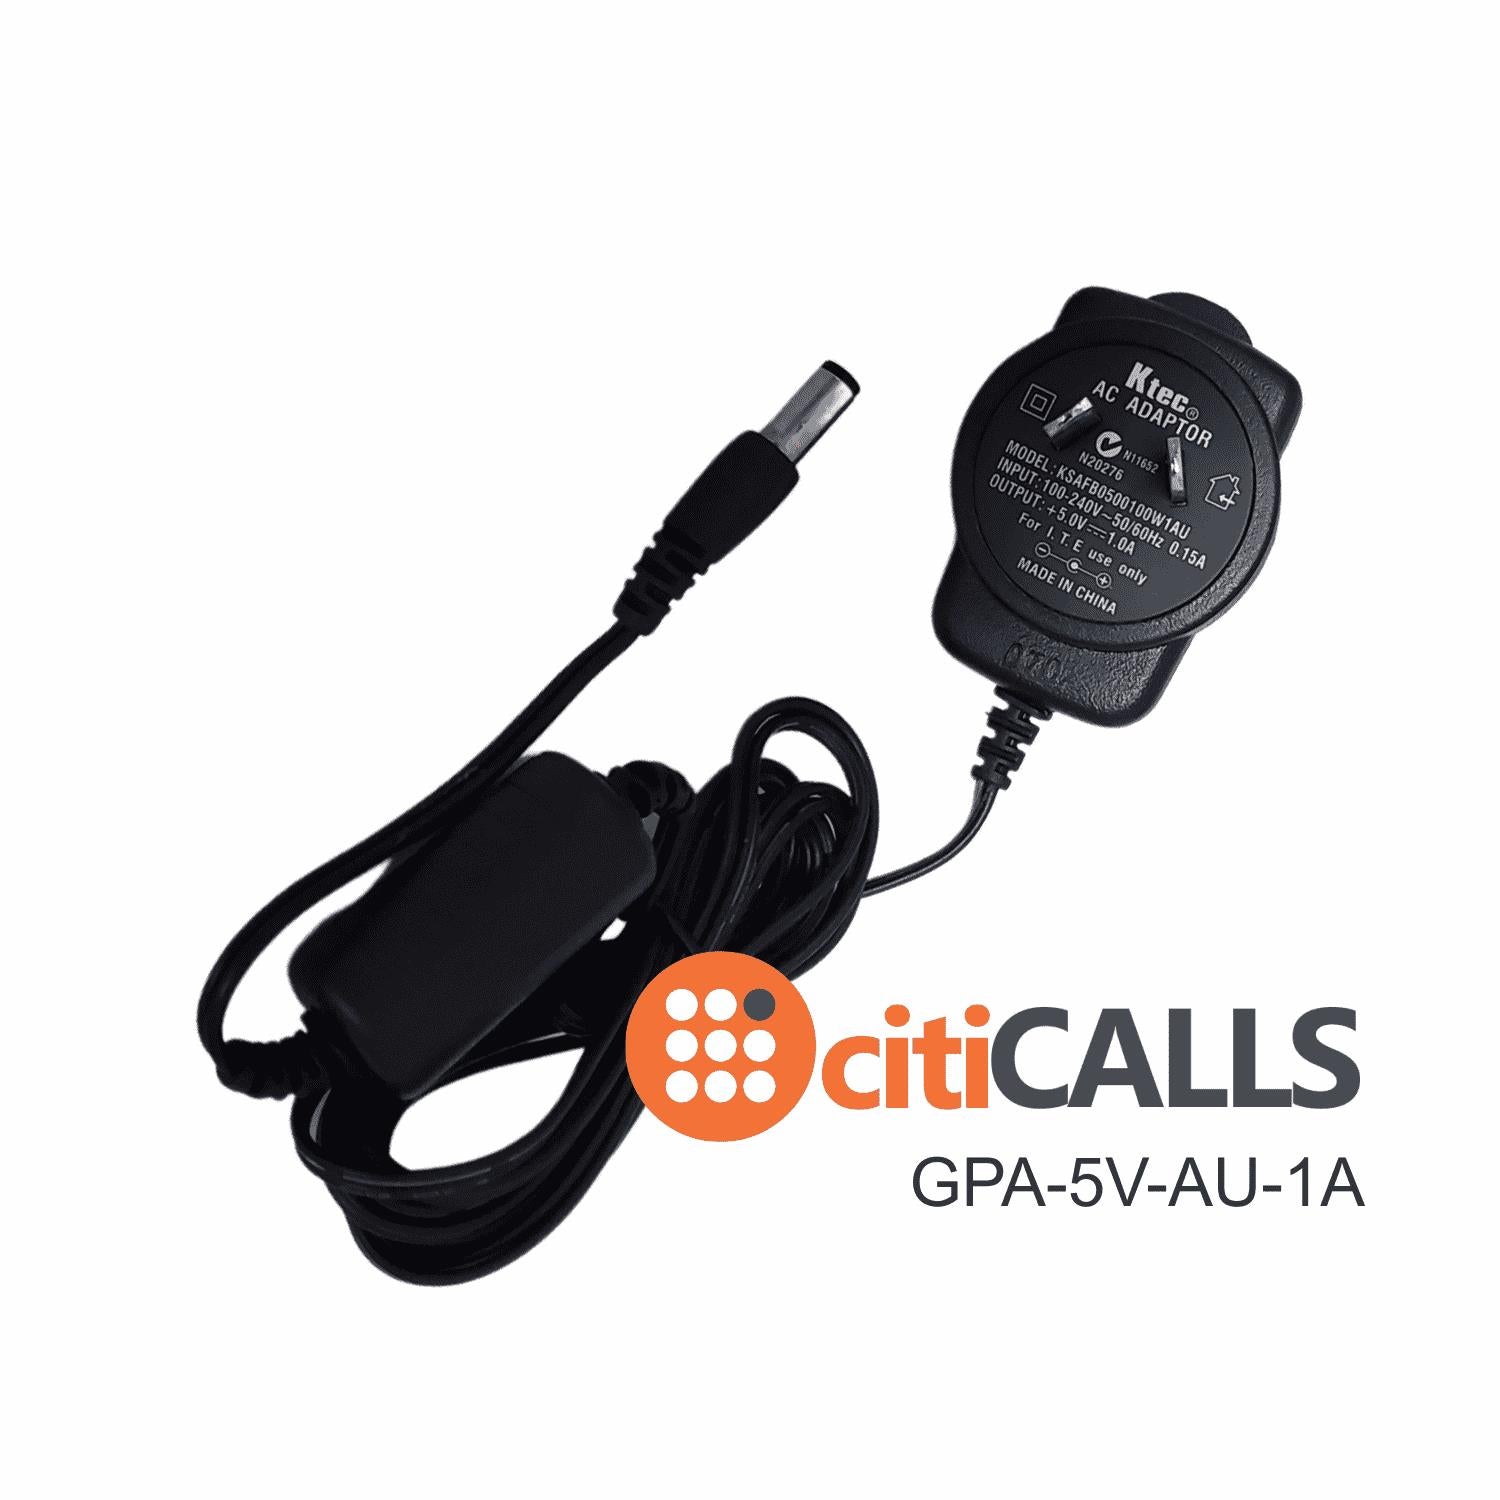 CHN Power Adapter for Grandstream 5v 1A AUSTRALIA PLUG 100-240V ATA Phone